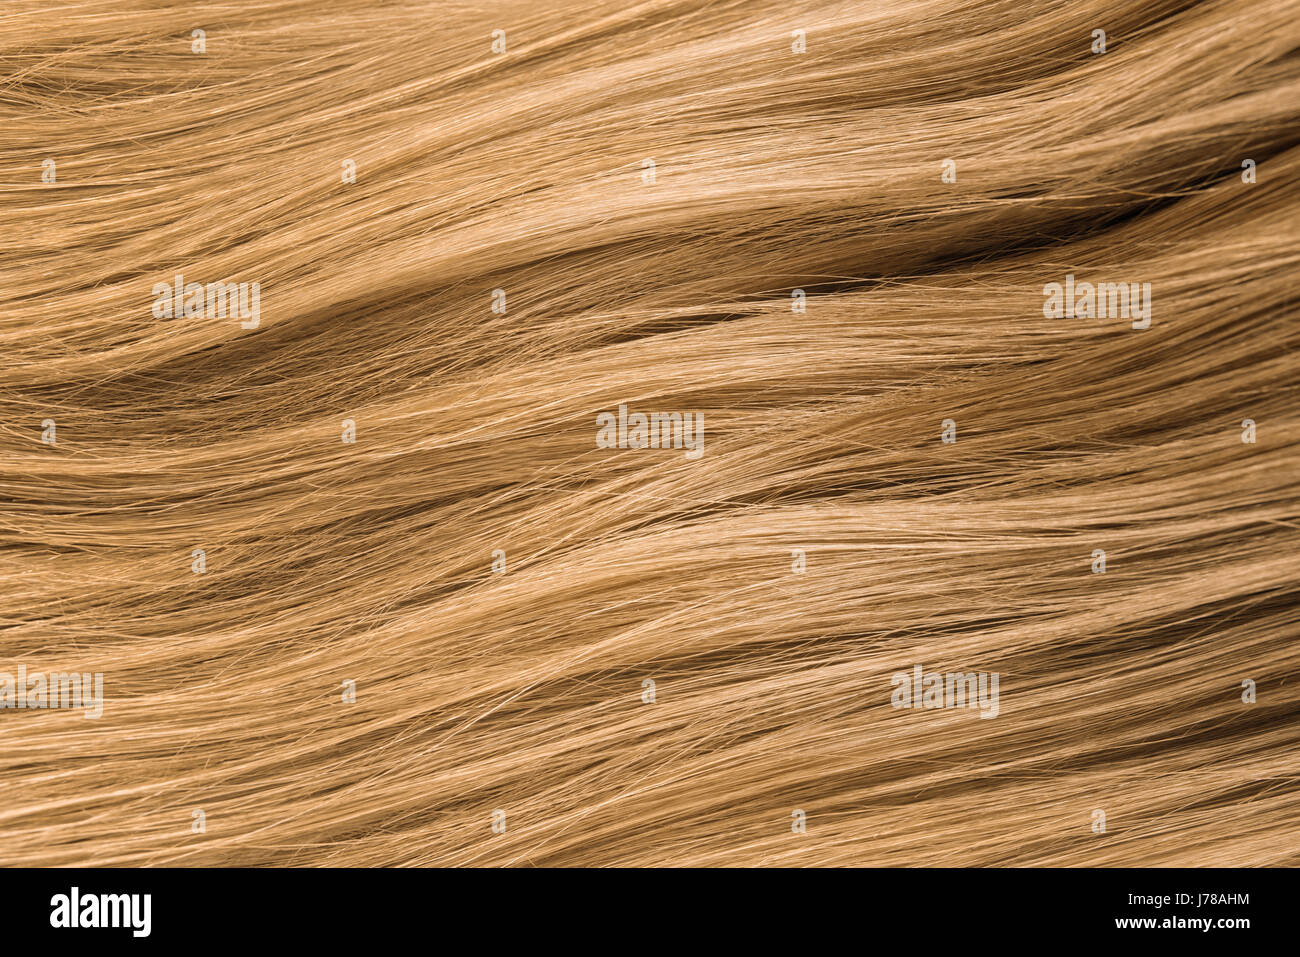 Les cheveux blonds. La texture des cheveux blonds Banque D'Images